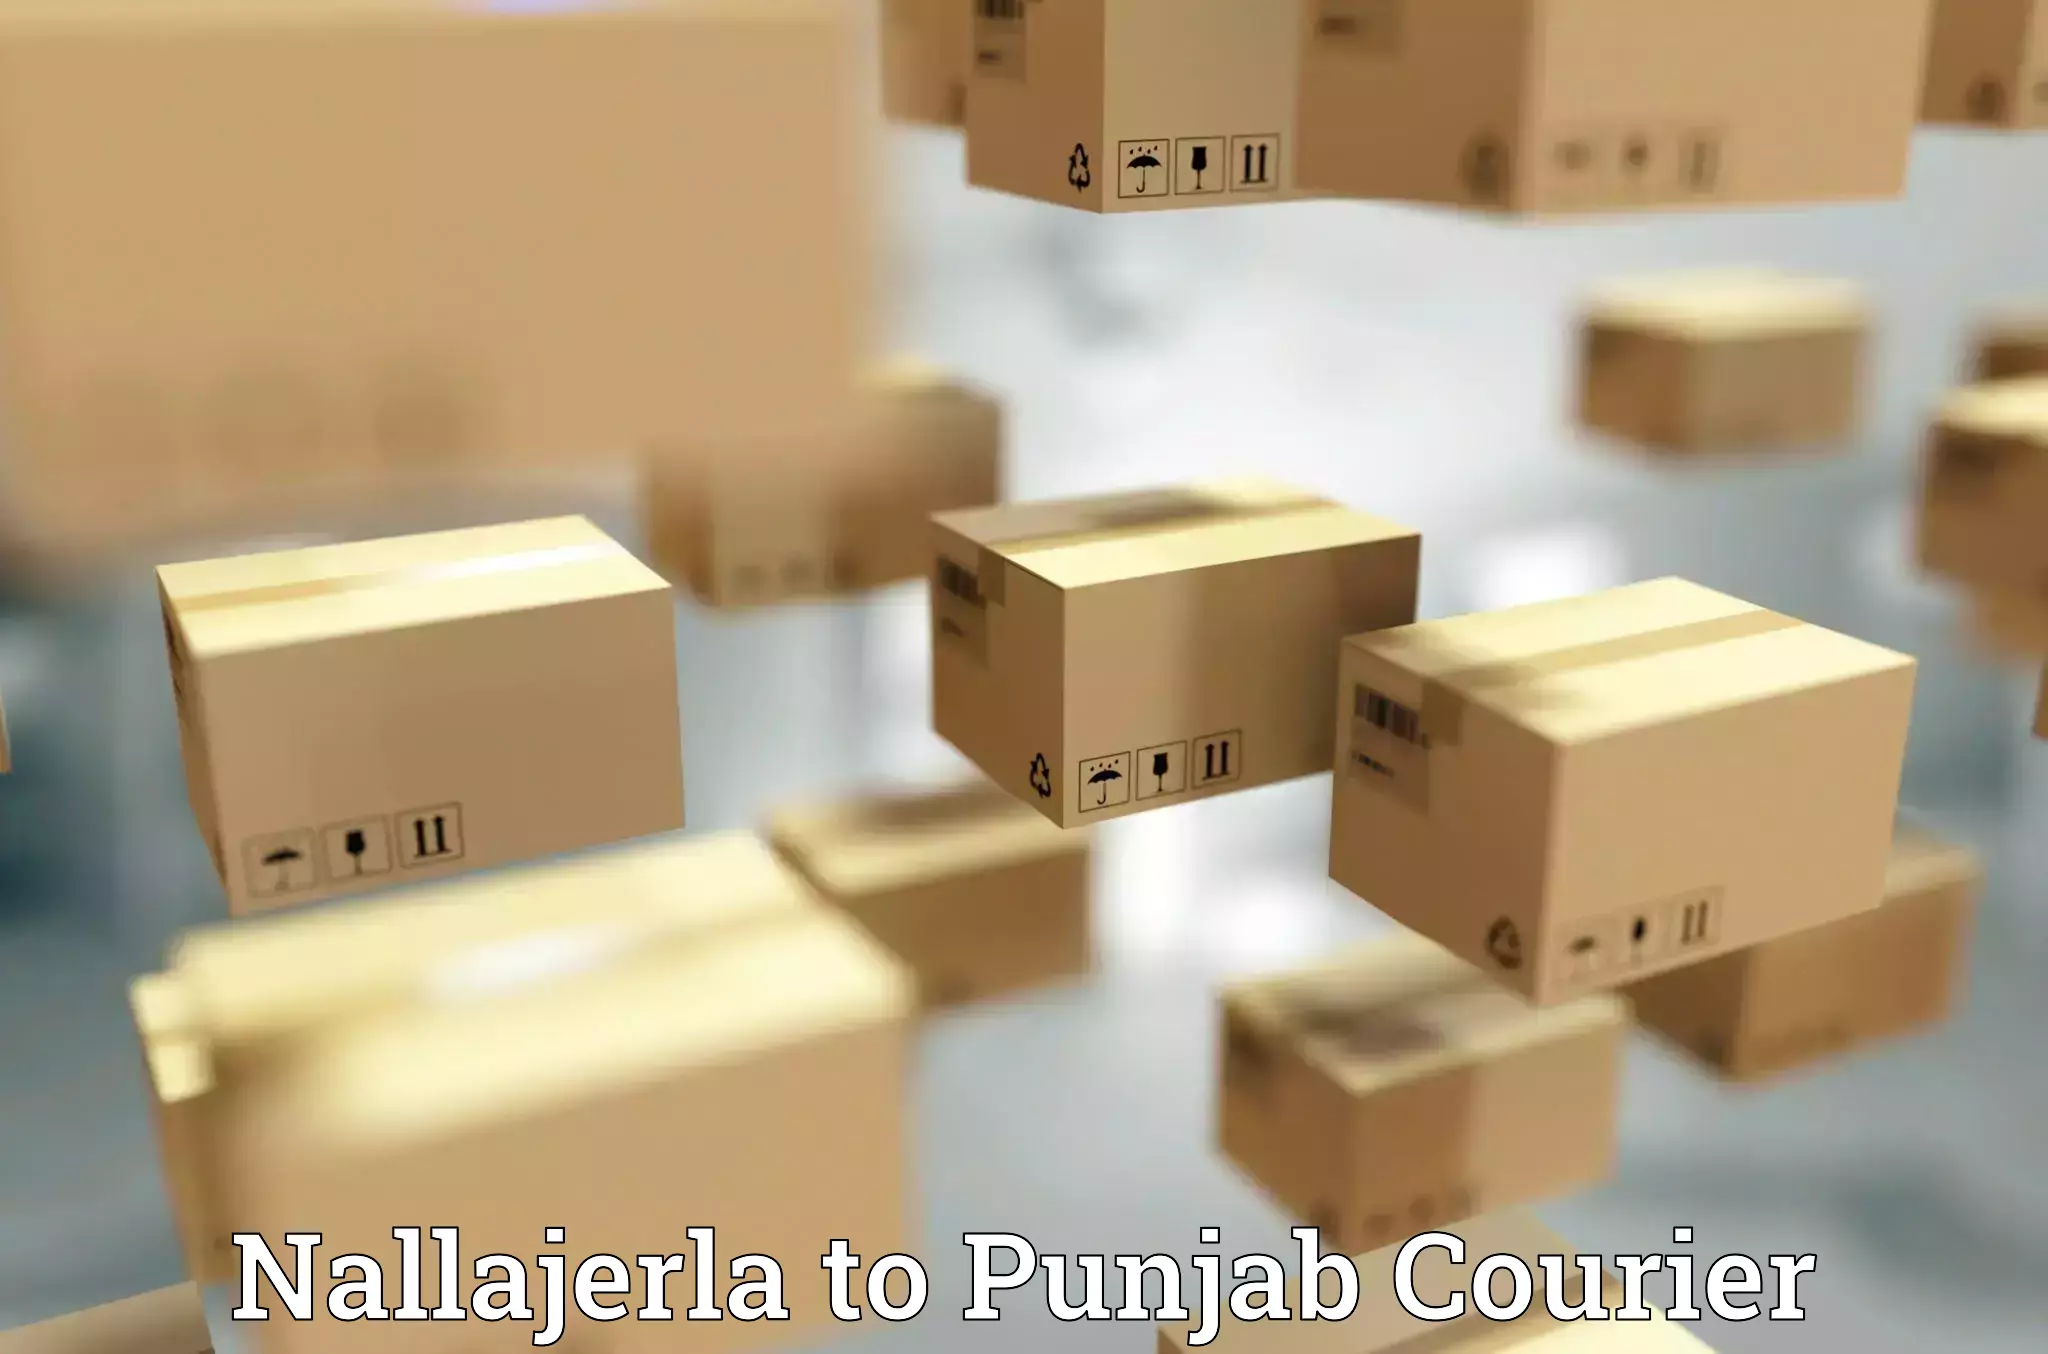 Courier service comparison in Nallajerla to Dhuri